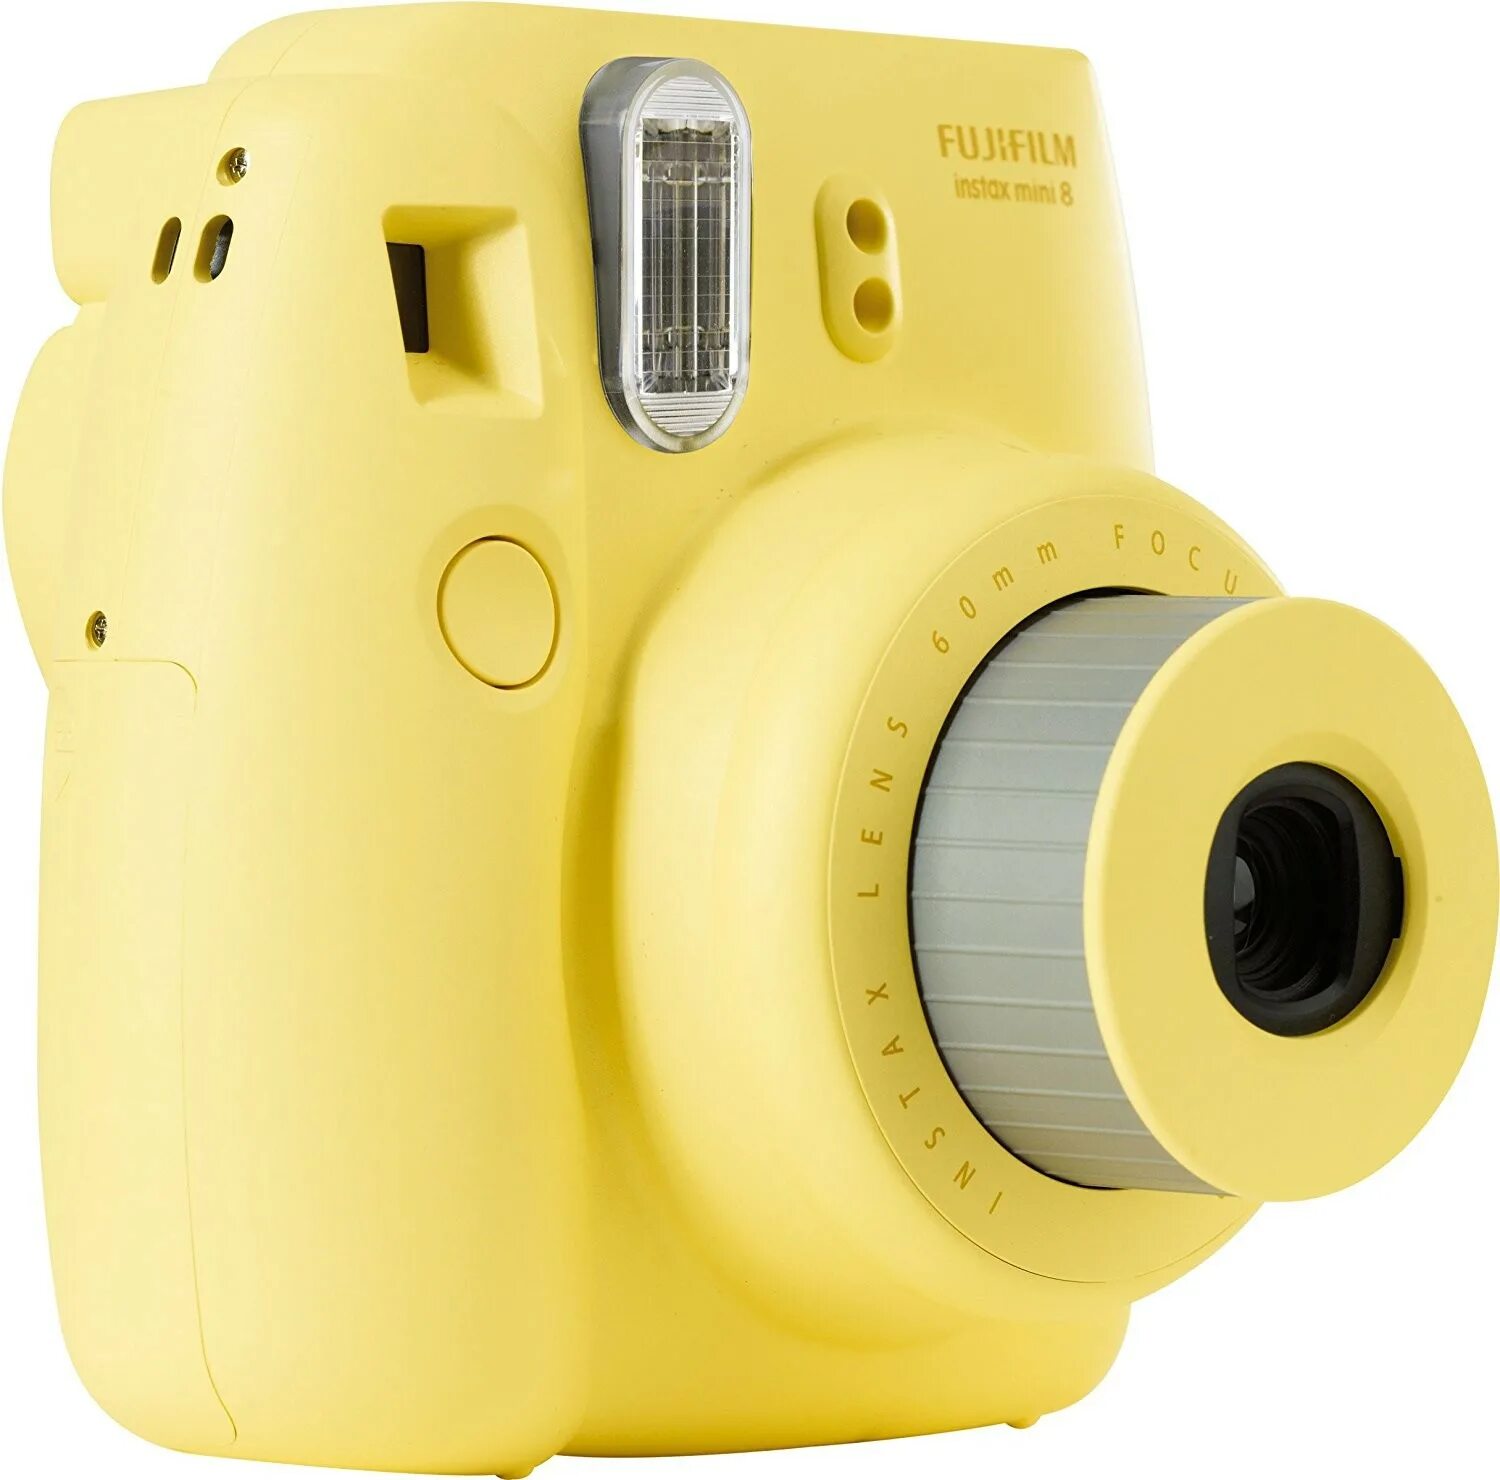 Инстакс фотоаппарат. Фотоаппарат Fujifilm Instax Mini 8. Фотоаппарат моментальной печати Fujifilm Instax желтый. Инстакс мини 9 желтый. Fujifilm Instax Mini желтый.